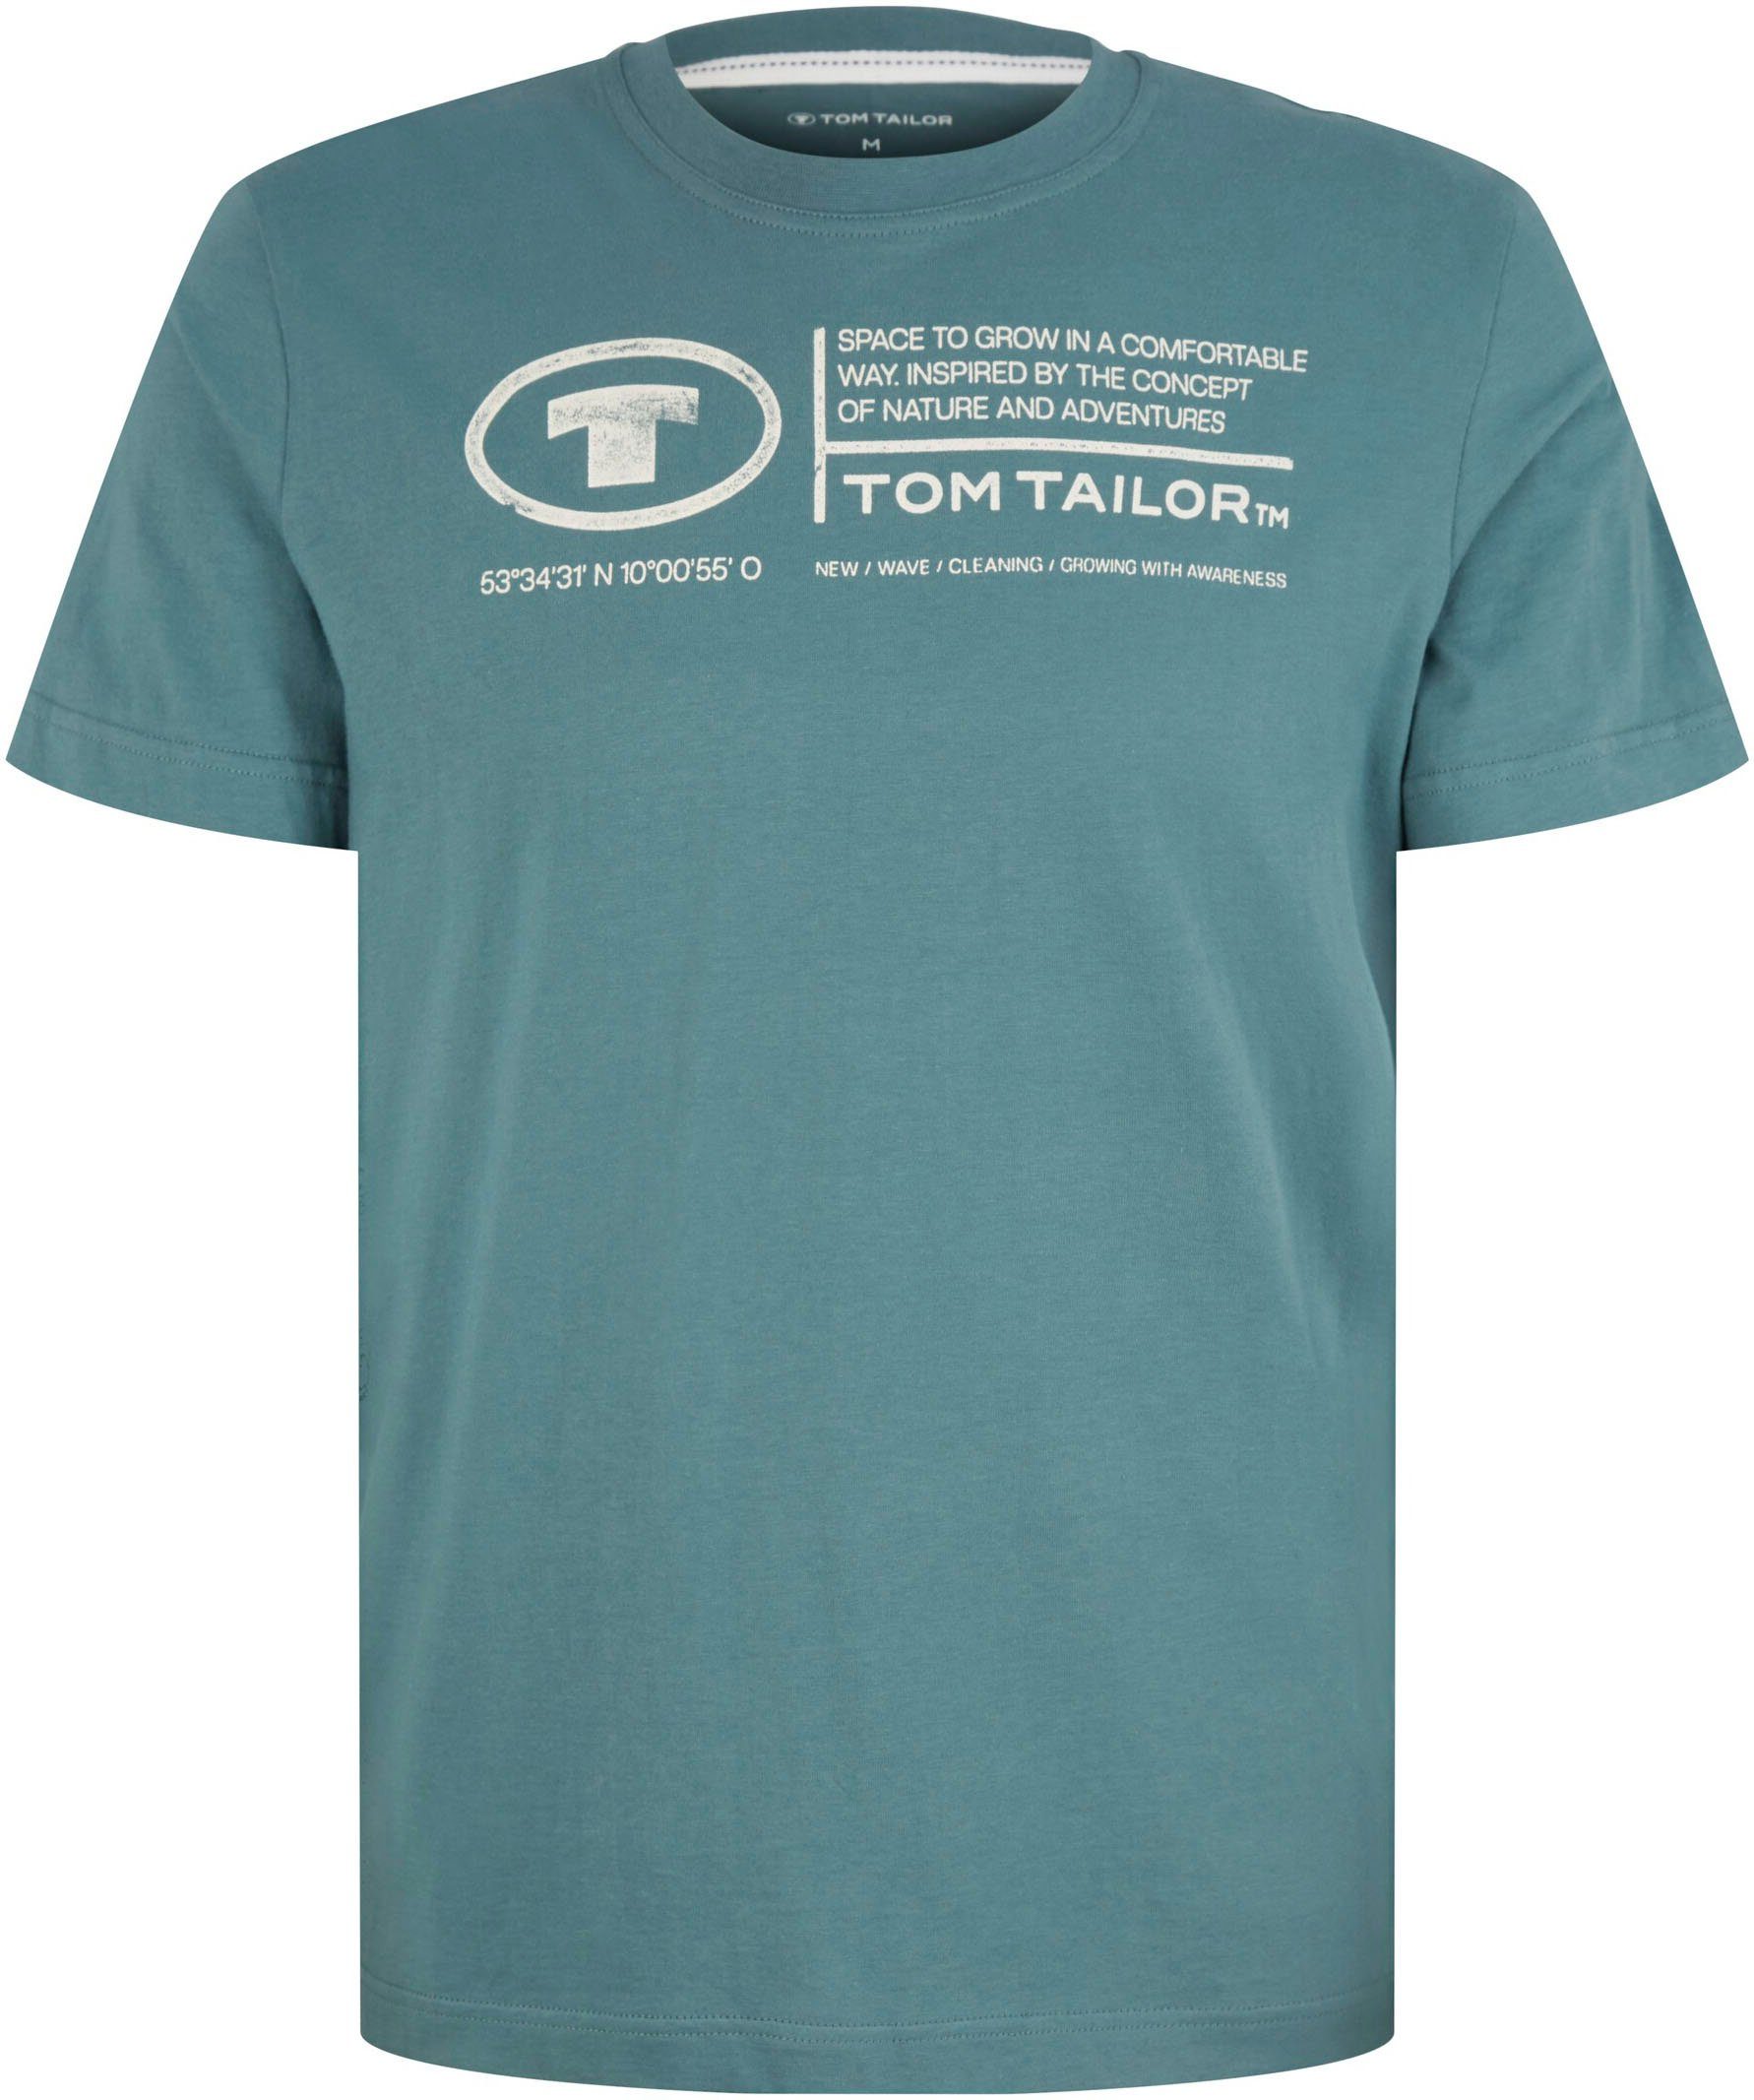 Print-Shirt Tailor TOM TAILOR T-Shirt Frontprint deep Herren bluis Tom